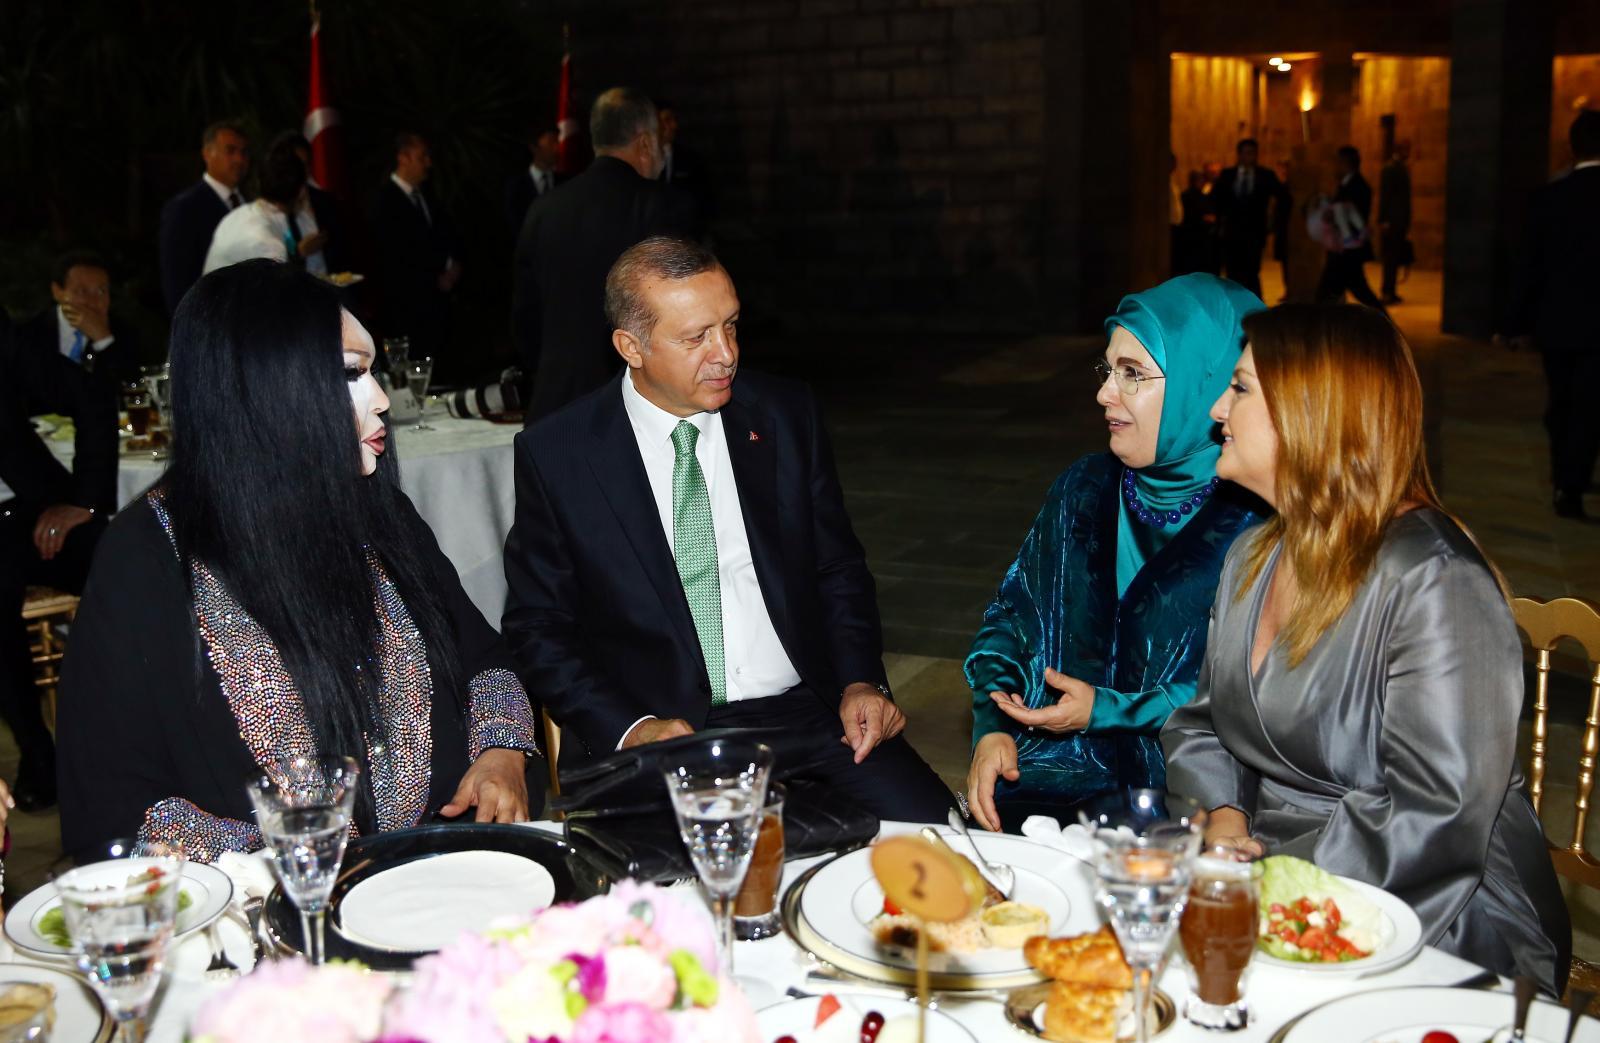 الرئيس التركي رجب طيب أردوغان وزوجته أمينة أردوغان مع الممثلة التركية الشهيرة بولنت أرسوي (إلى اليسار) والمغنية سيبل جان (إلى اليمين) في عشاء رمضاني في إسطنبول في عام 2016.